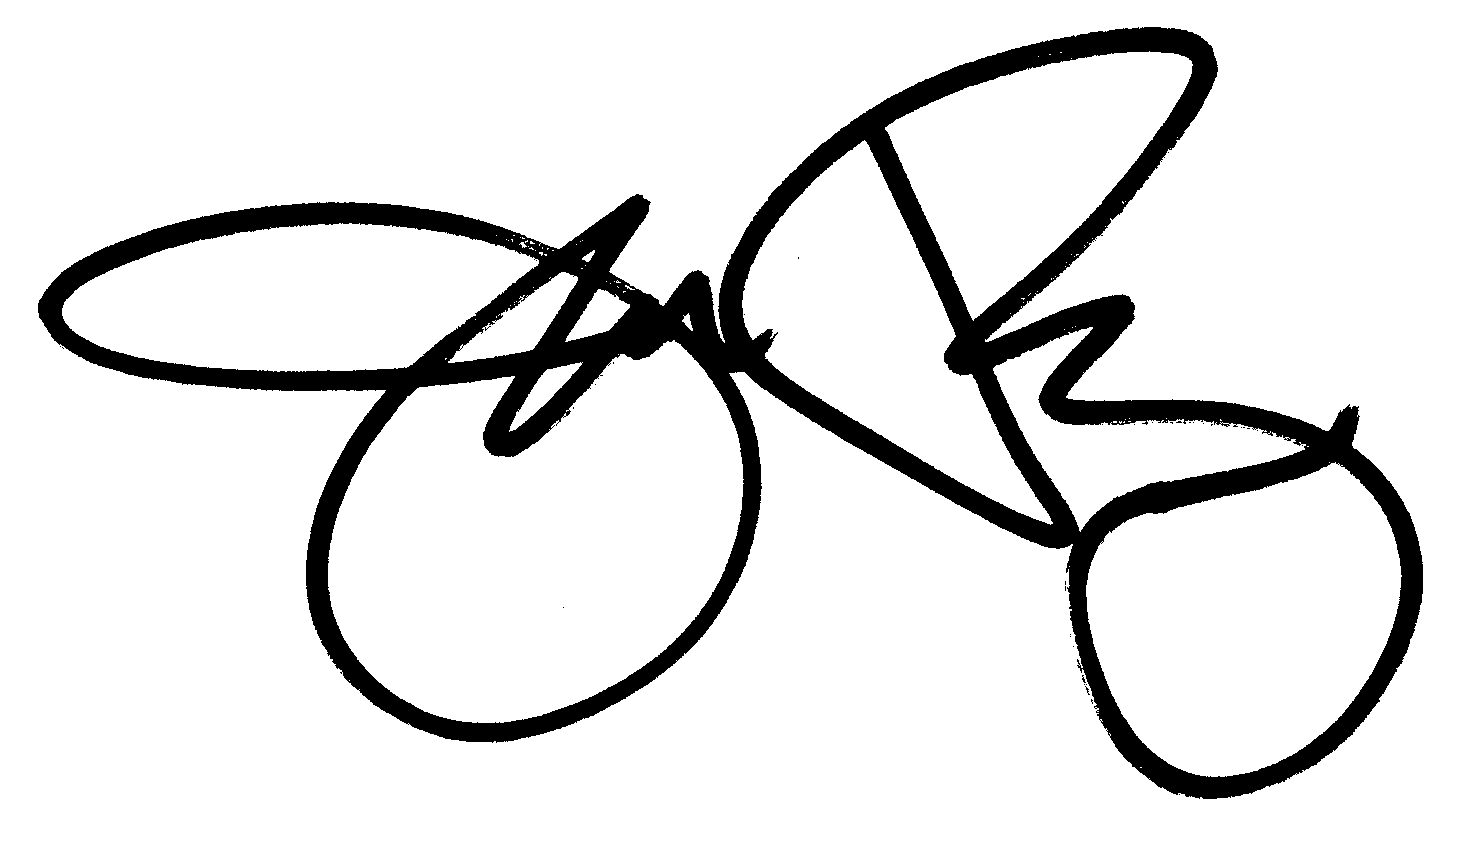 Jeri Ryan autograph facsimile